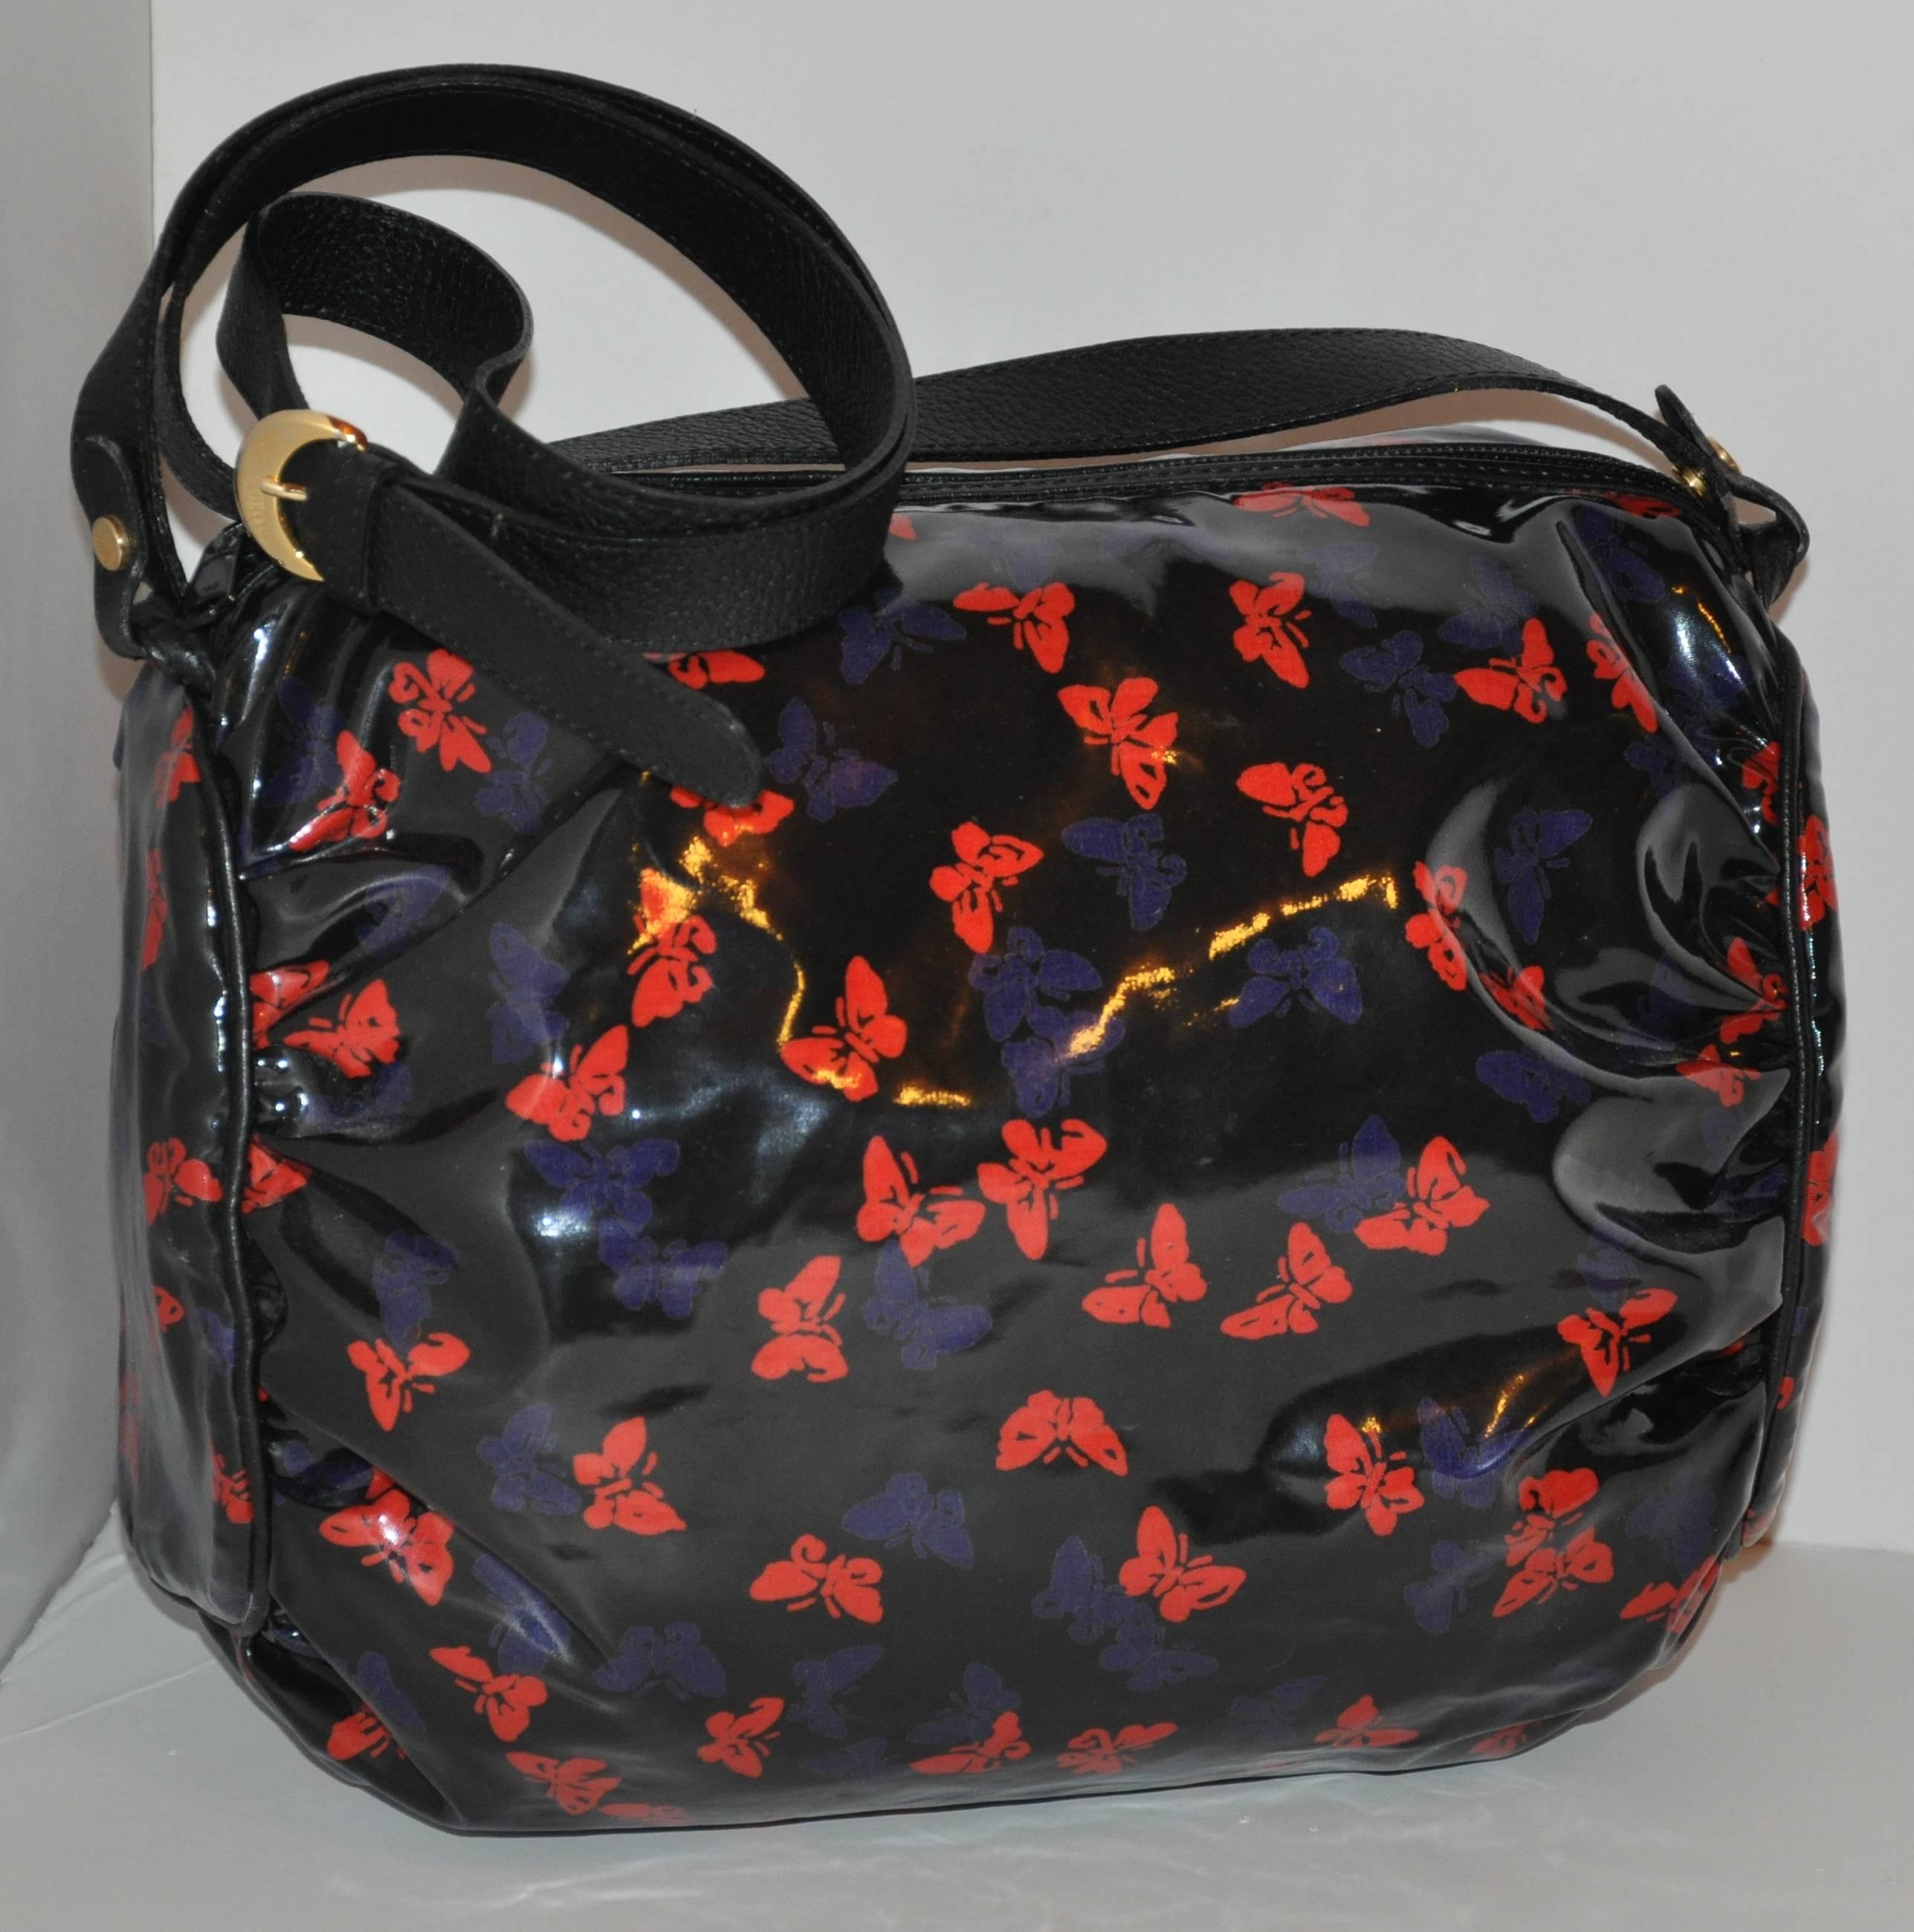         Le magnifique sac à bandoulière en toile enduite de vinyle de Bottega Veneta est orné de papillons multicolores sur l'extérieur du sac. L'intérieur est entièrement doublé de toile souple et comporte un compartiment zippé ainsi que le logo de